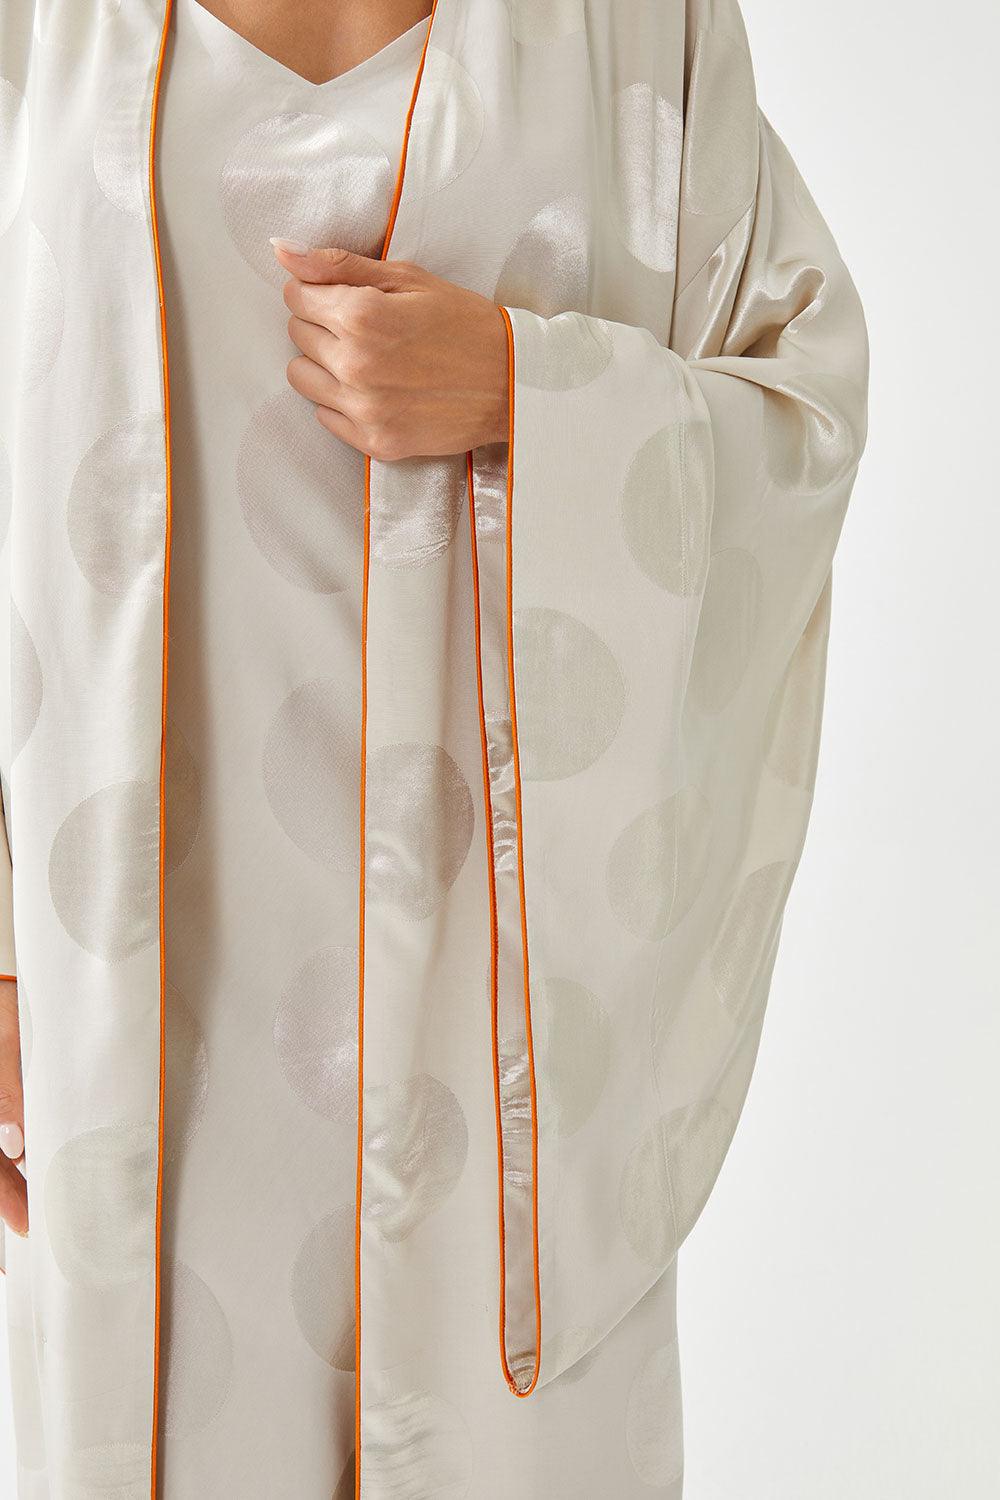 Neroli Long Silk Sateen Patterned  Kimono Set - Beige - Bocan